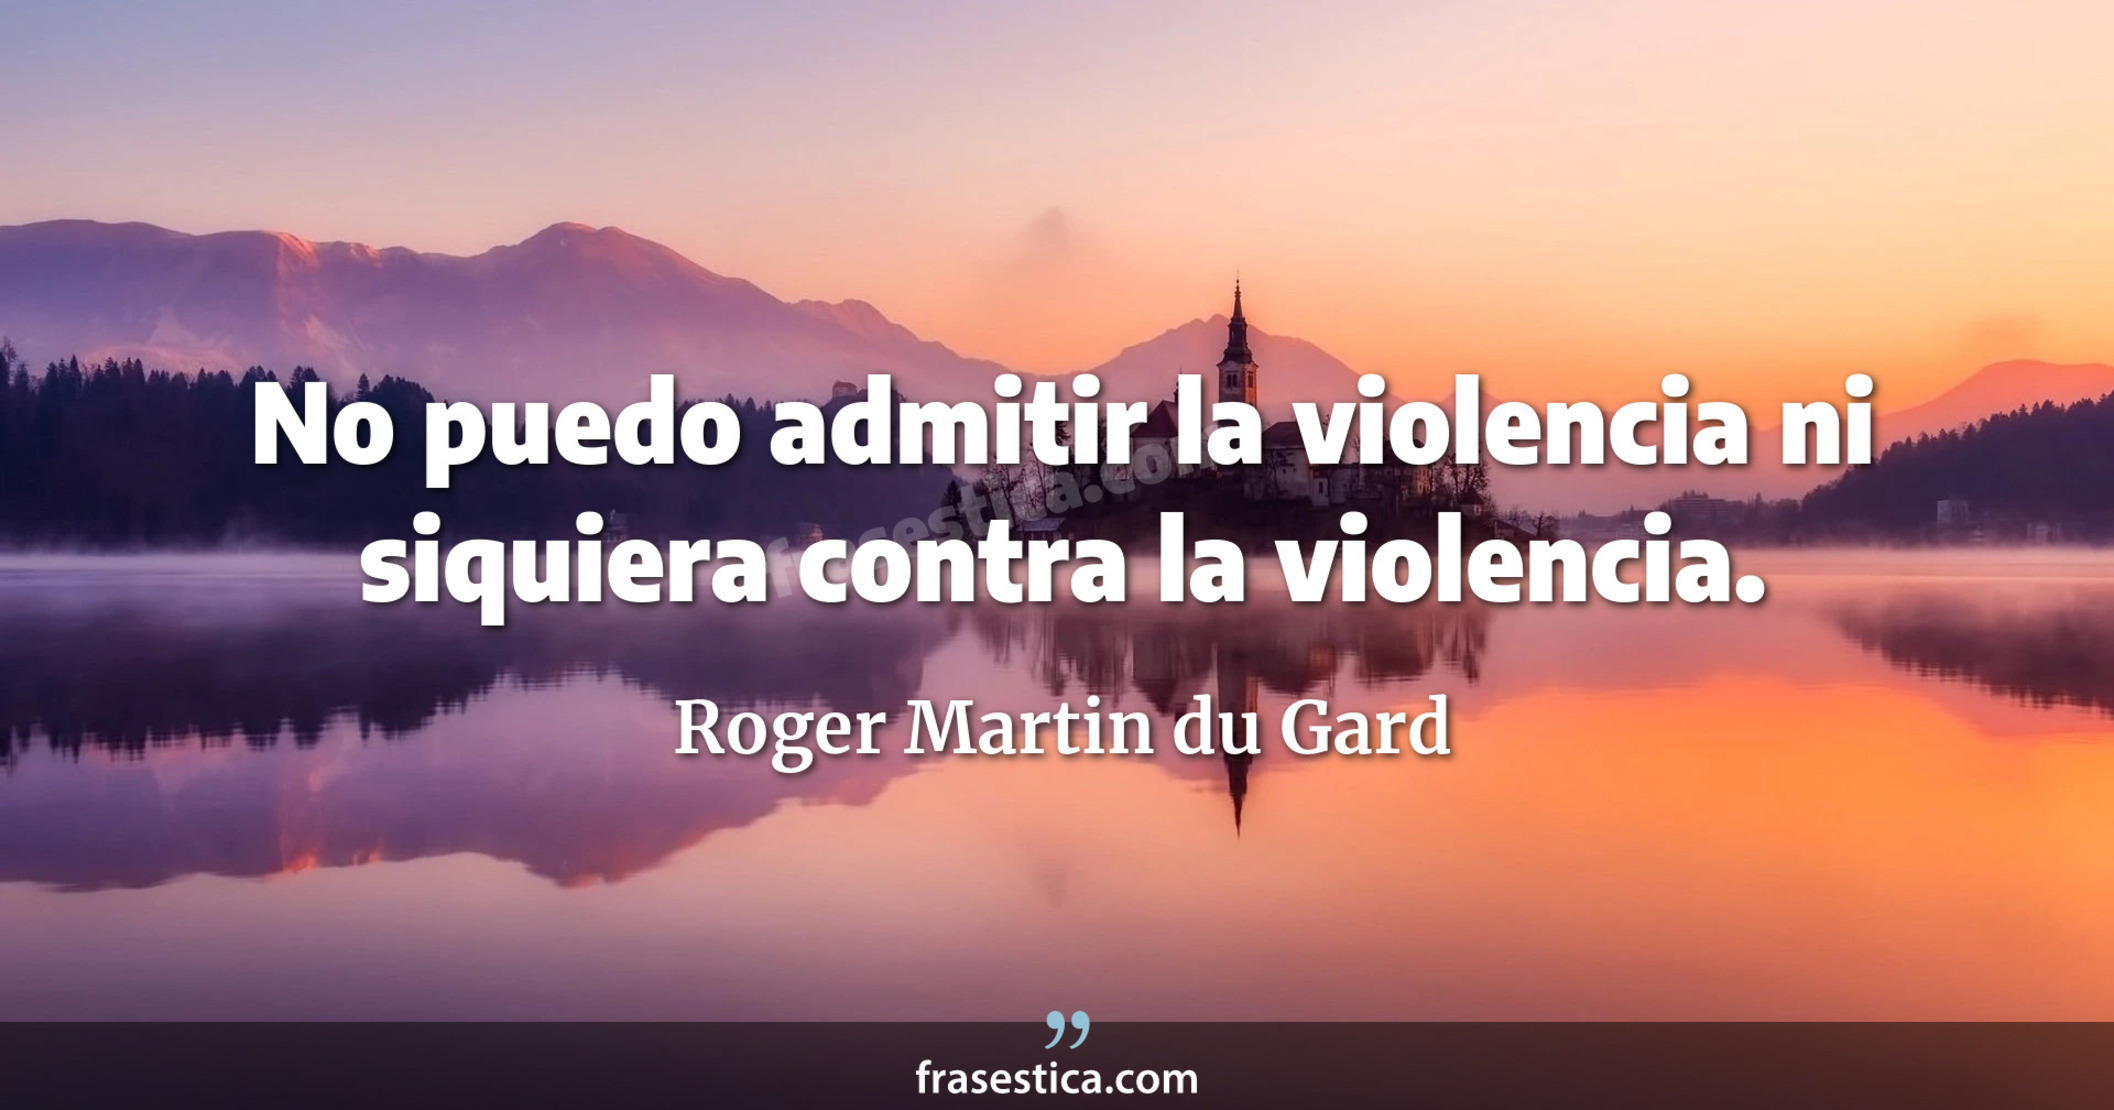 No puedo admitir la violencia ni siquiera contra la violencia. - Roger Martin du Gard